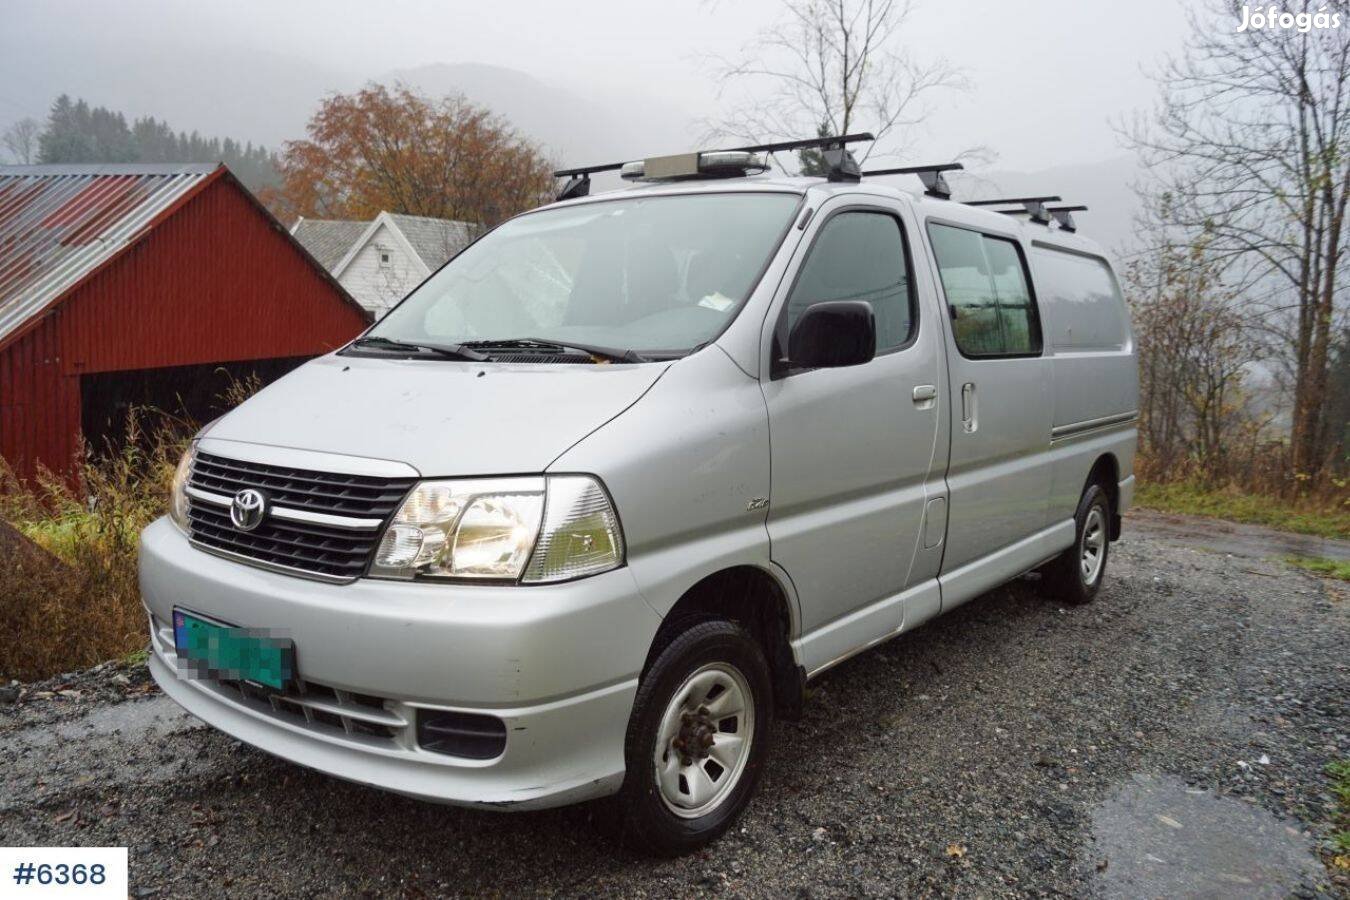 Keresek: Toyota Hiace (2007-től) kisbuszt vennék országszerte!